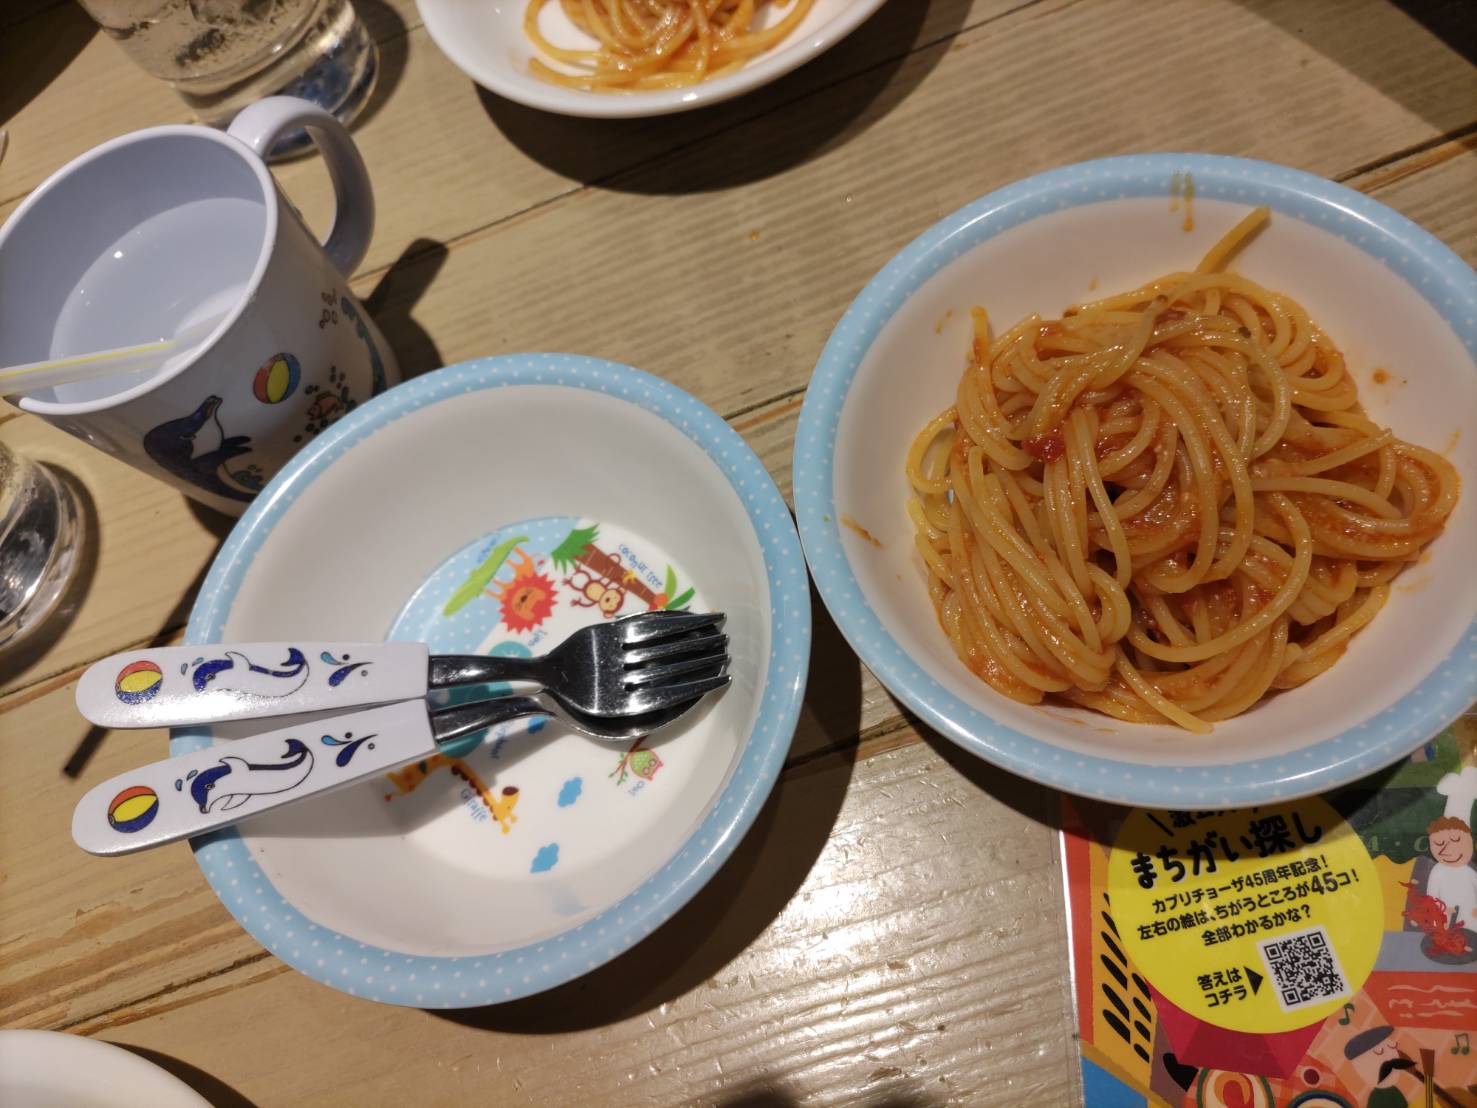 カプリチョーザで用意される子ども用のコップと小皿とフォーク・スプーンの写真